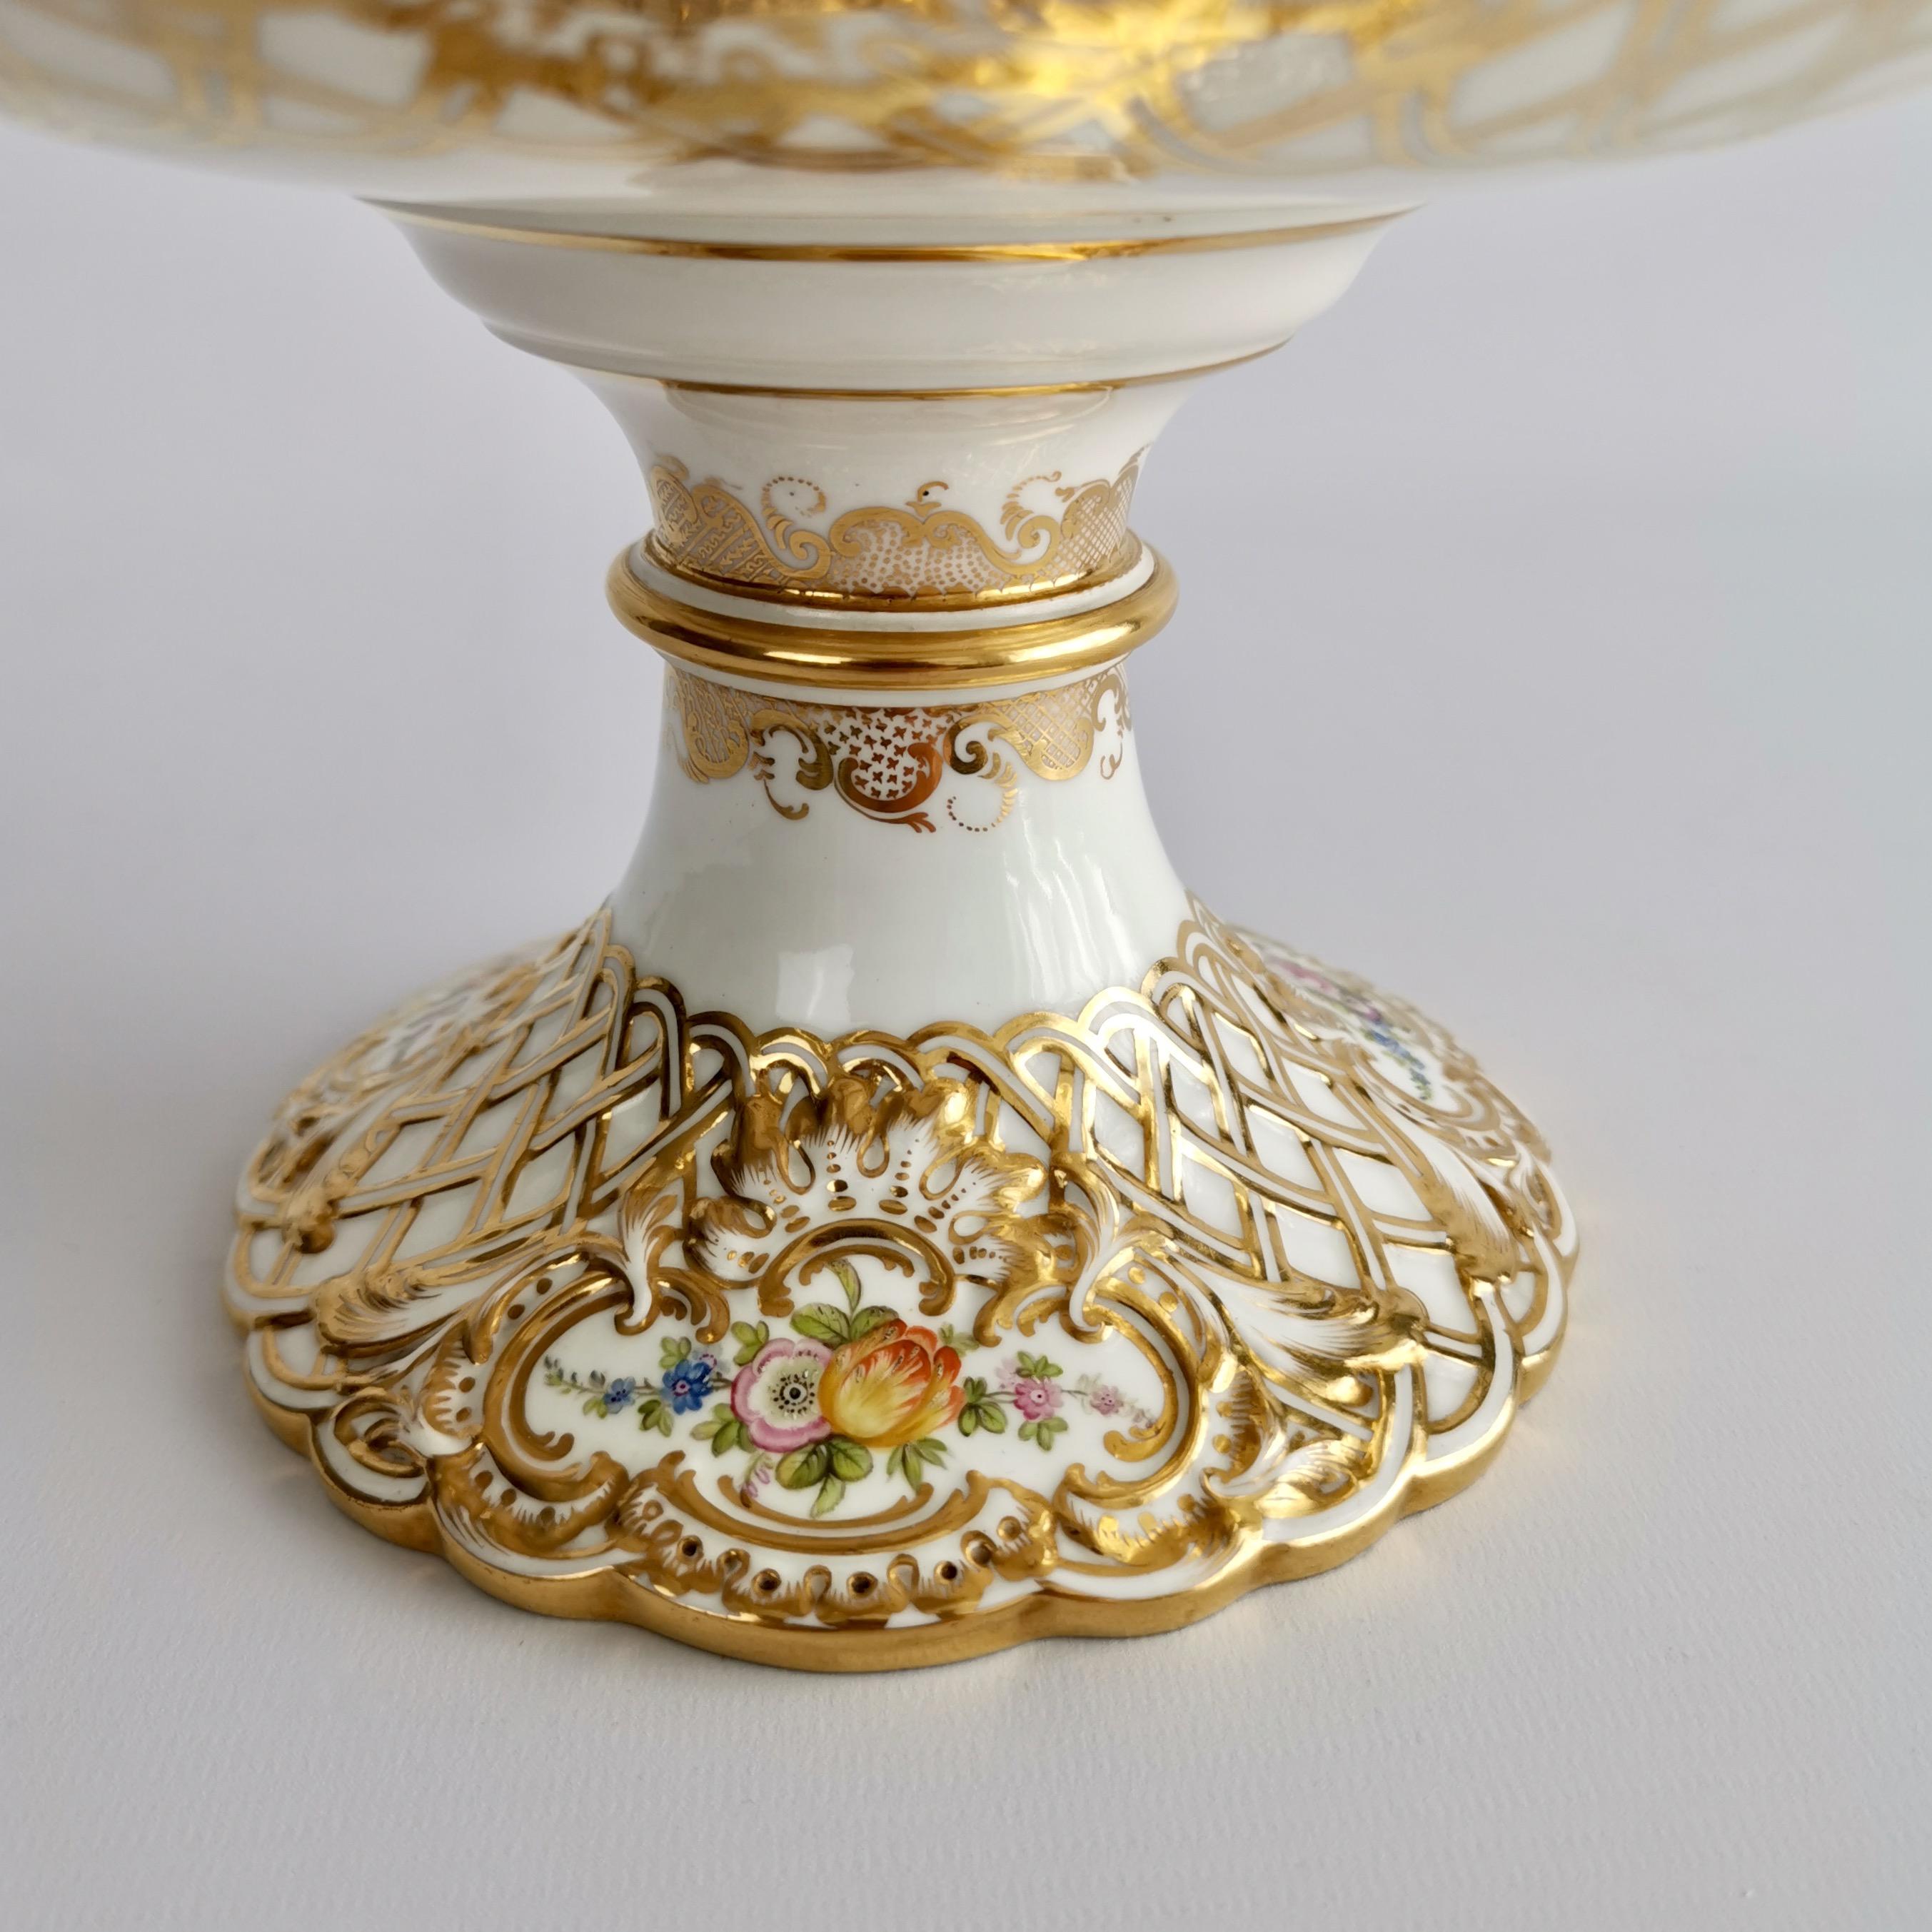 Minton Porcelain Dessert Service, White, Flowers J. Bancroft, Victorian, 1841 8